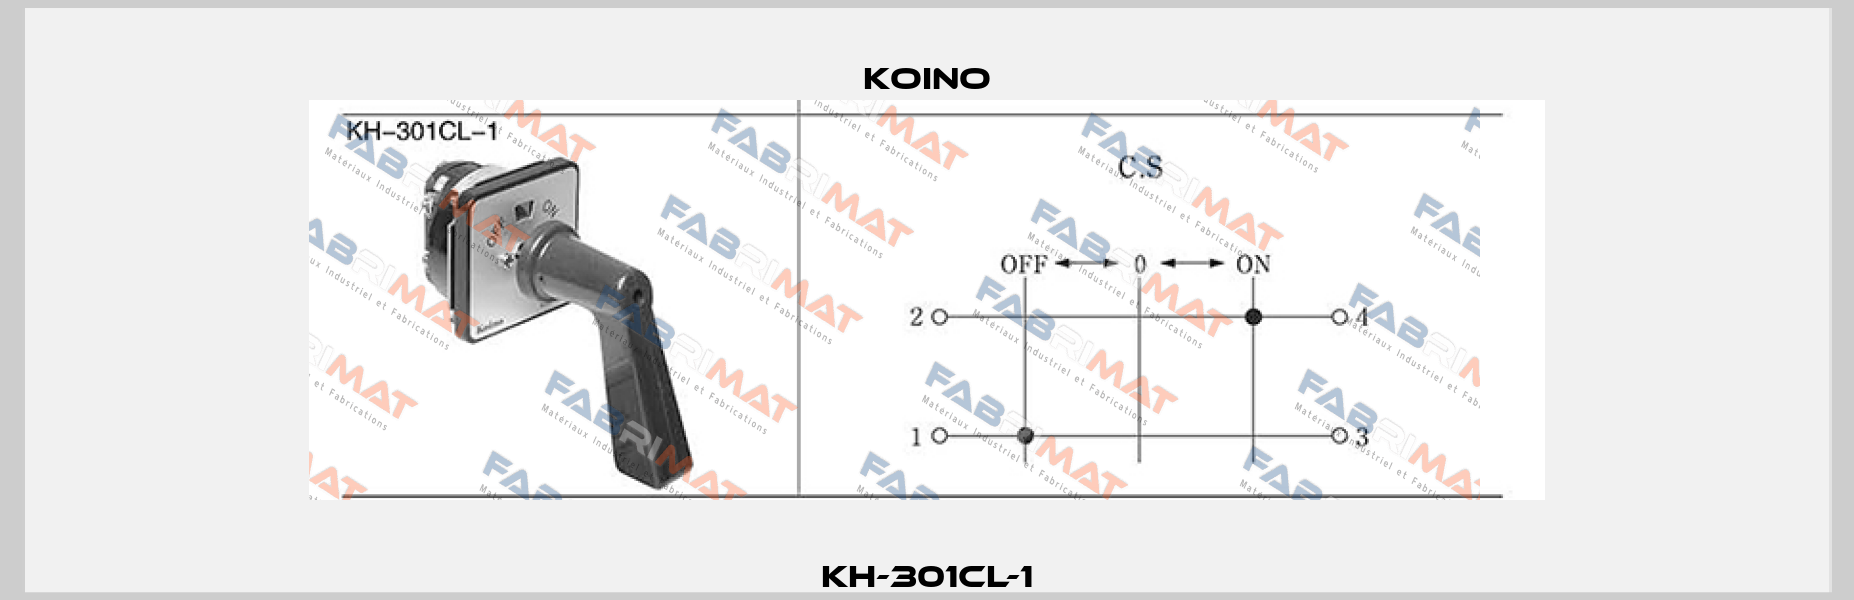 KH-301CL-1 Koino